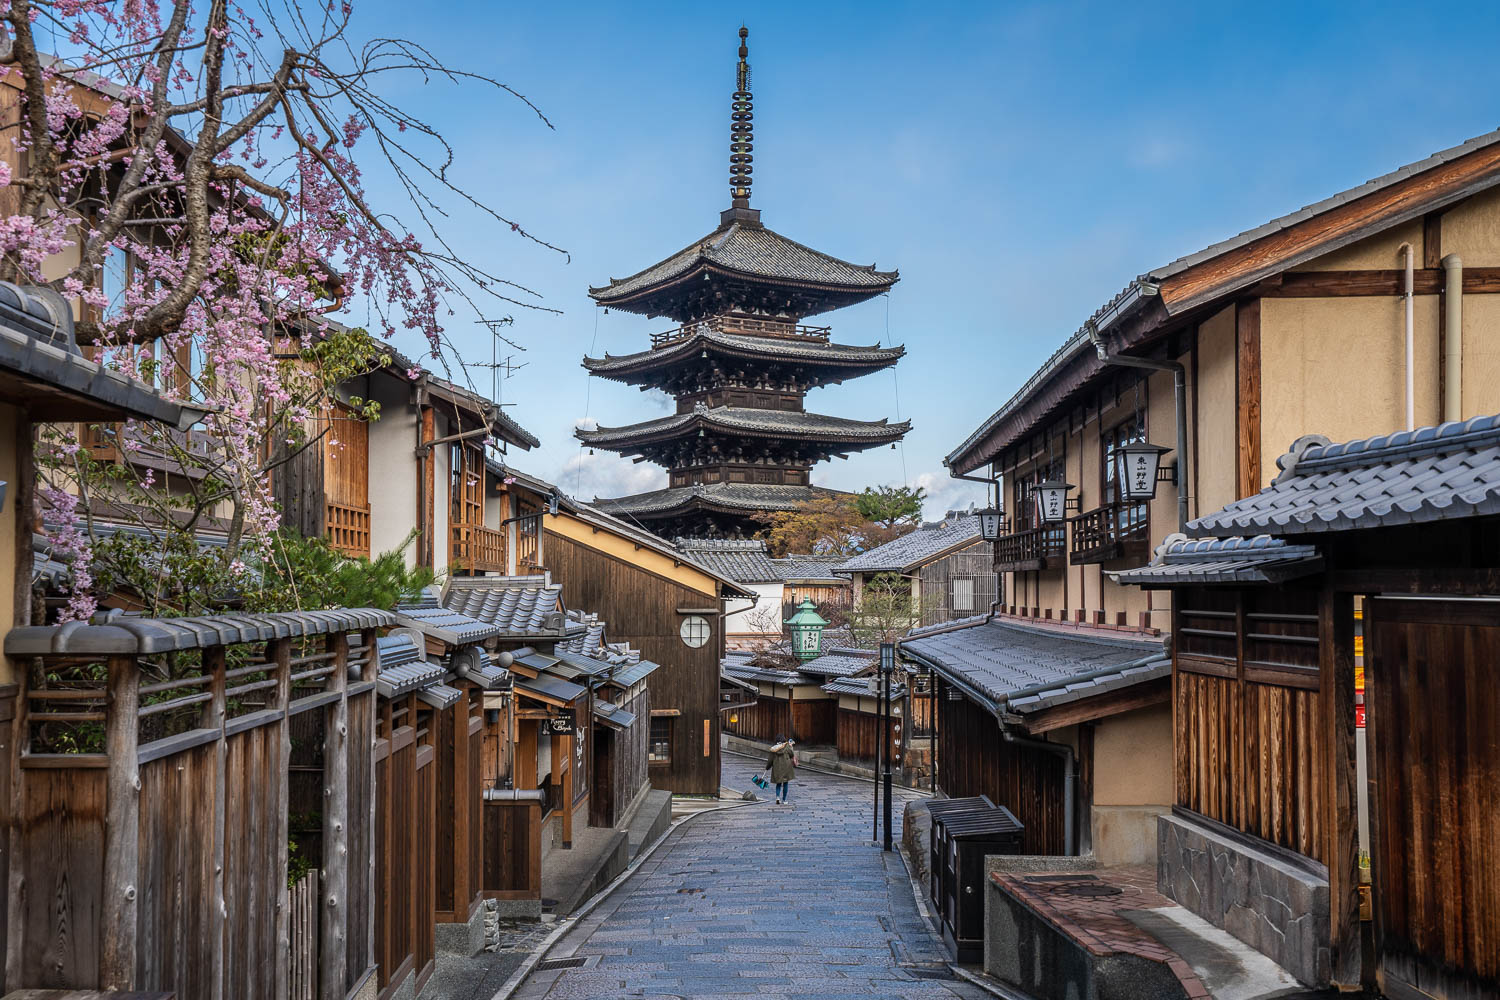 Du lịch Kyoto Nhật Bản - Những khám phá thú vị không thể bỏ lỡ